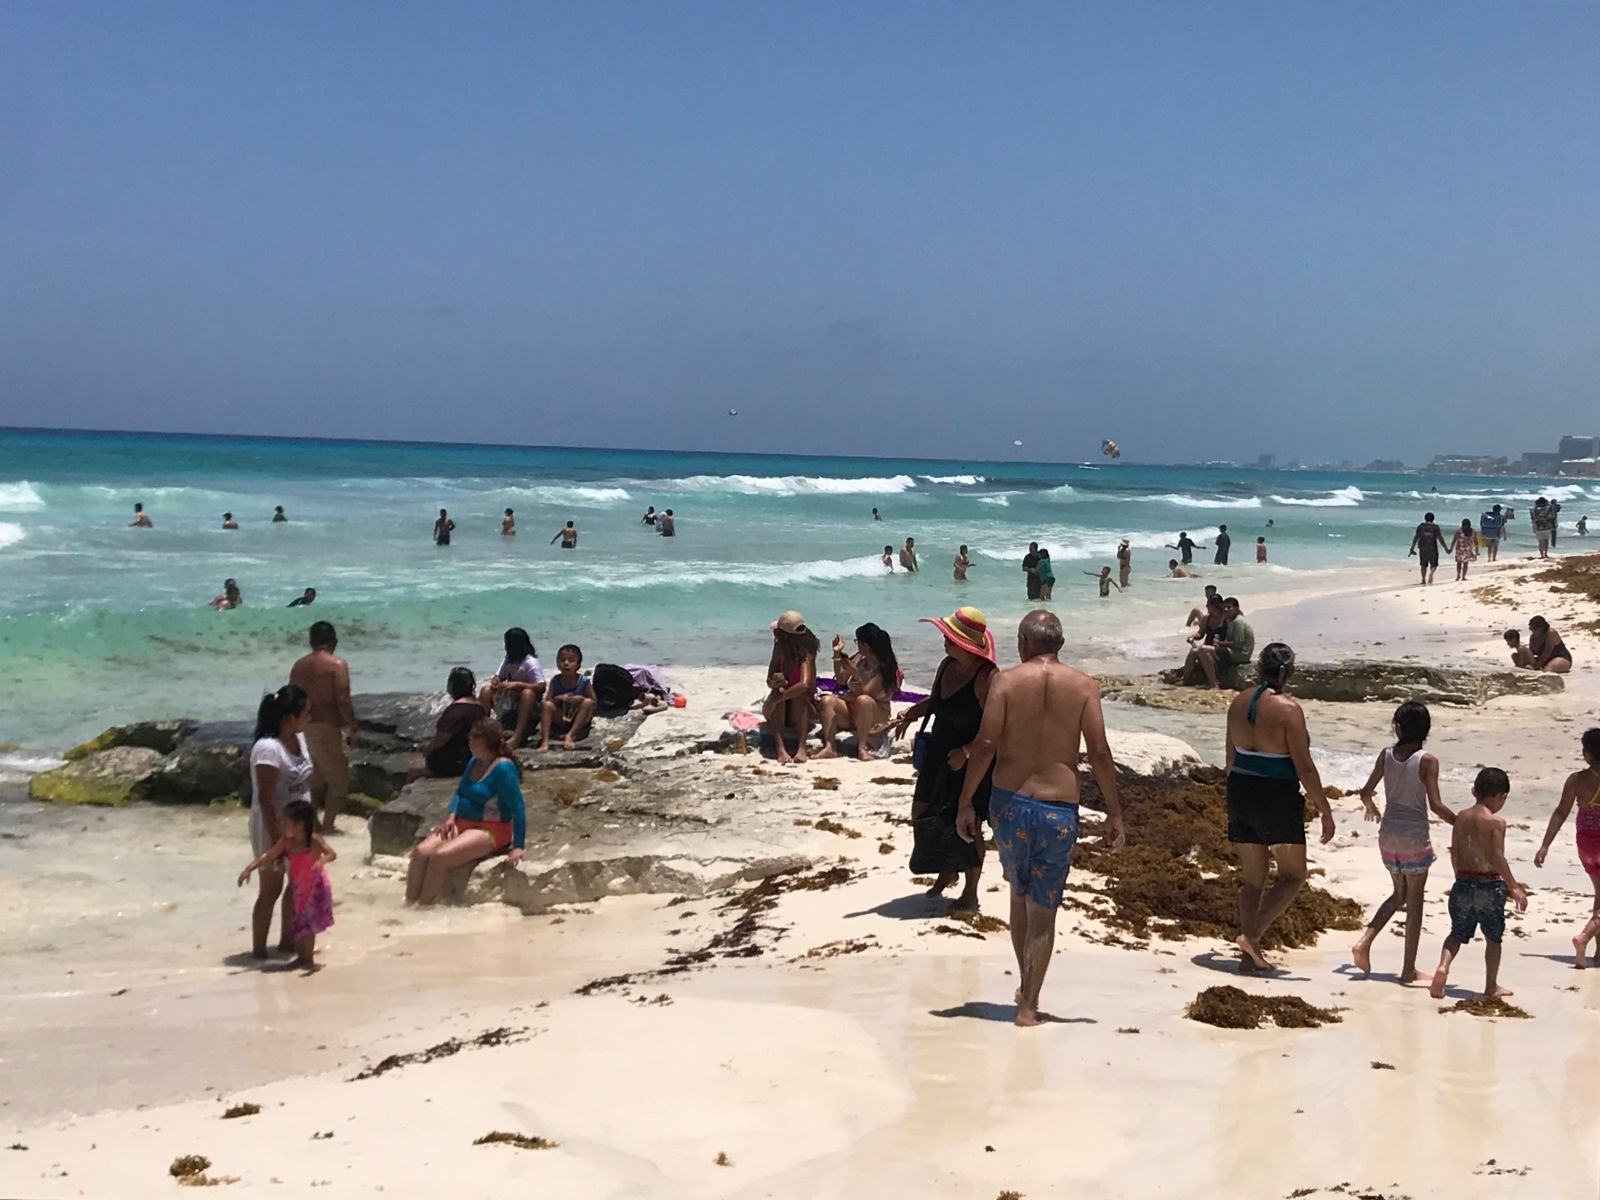 Cerca de 500 bañistas arriban a Playa Fórum en Cancún para disfrutar del sol y la arena: EN VIVO